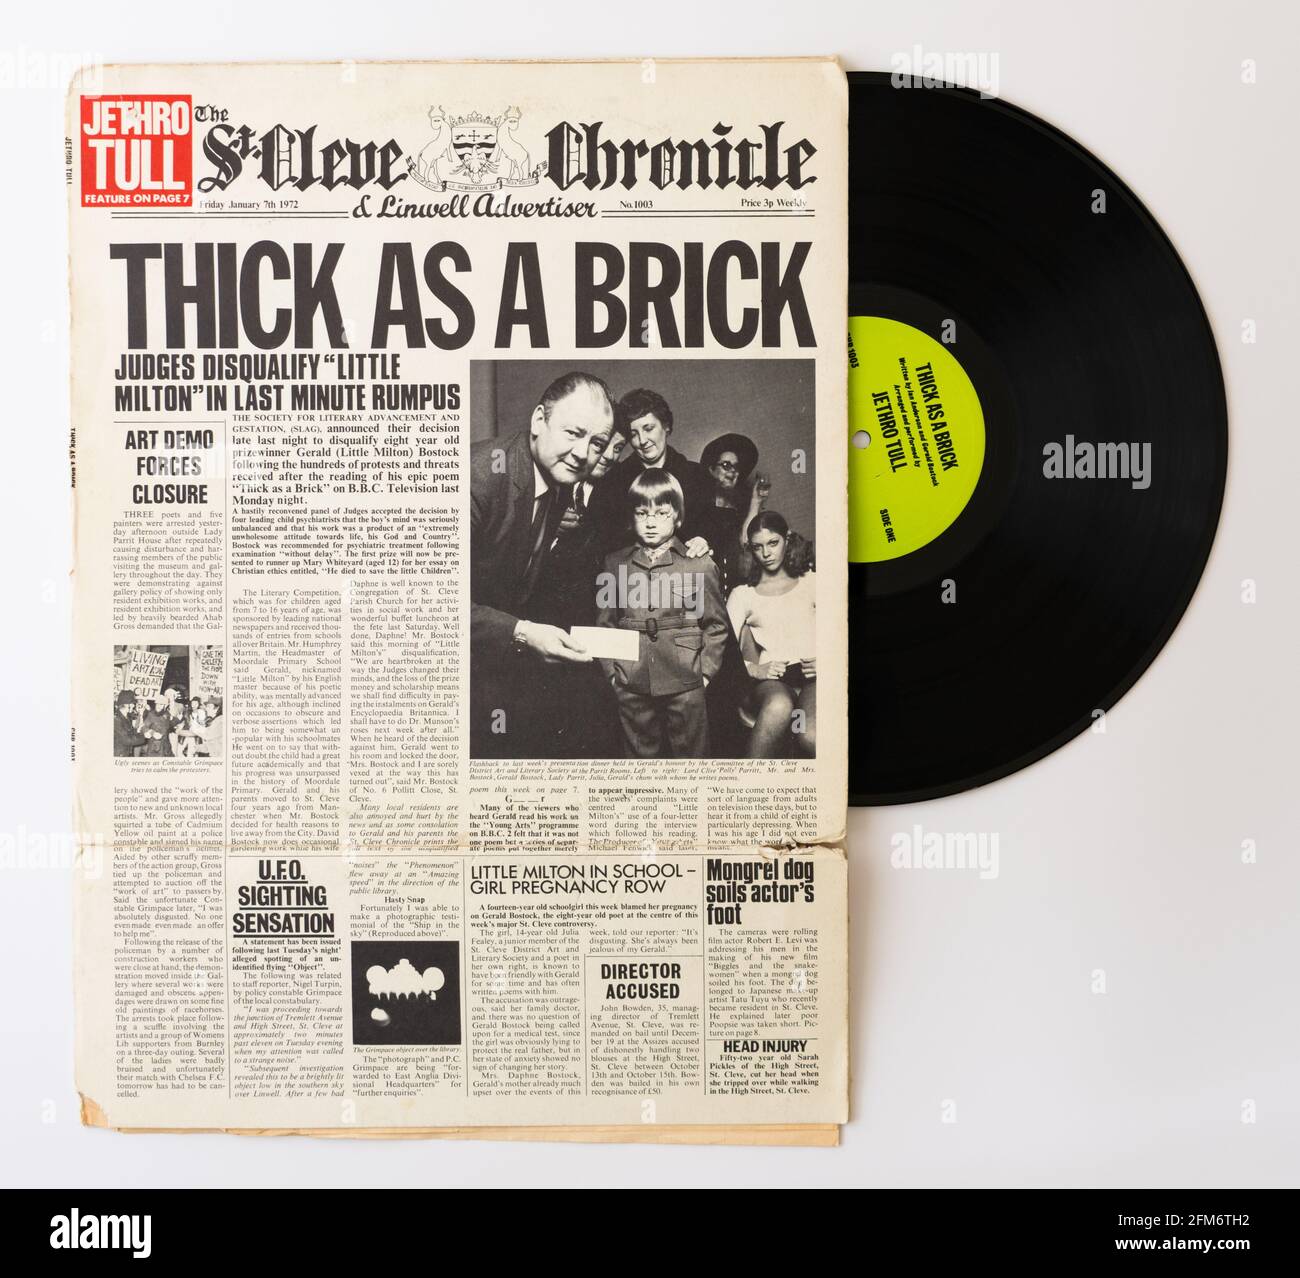 Álbum de Jethro Tull - Thick as a Brick - Concepto álbum con funda de periódico plegable Foto de stock